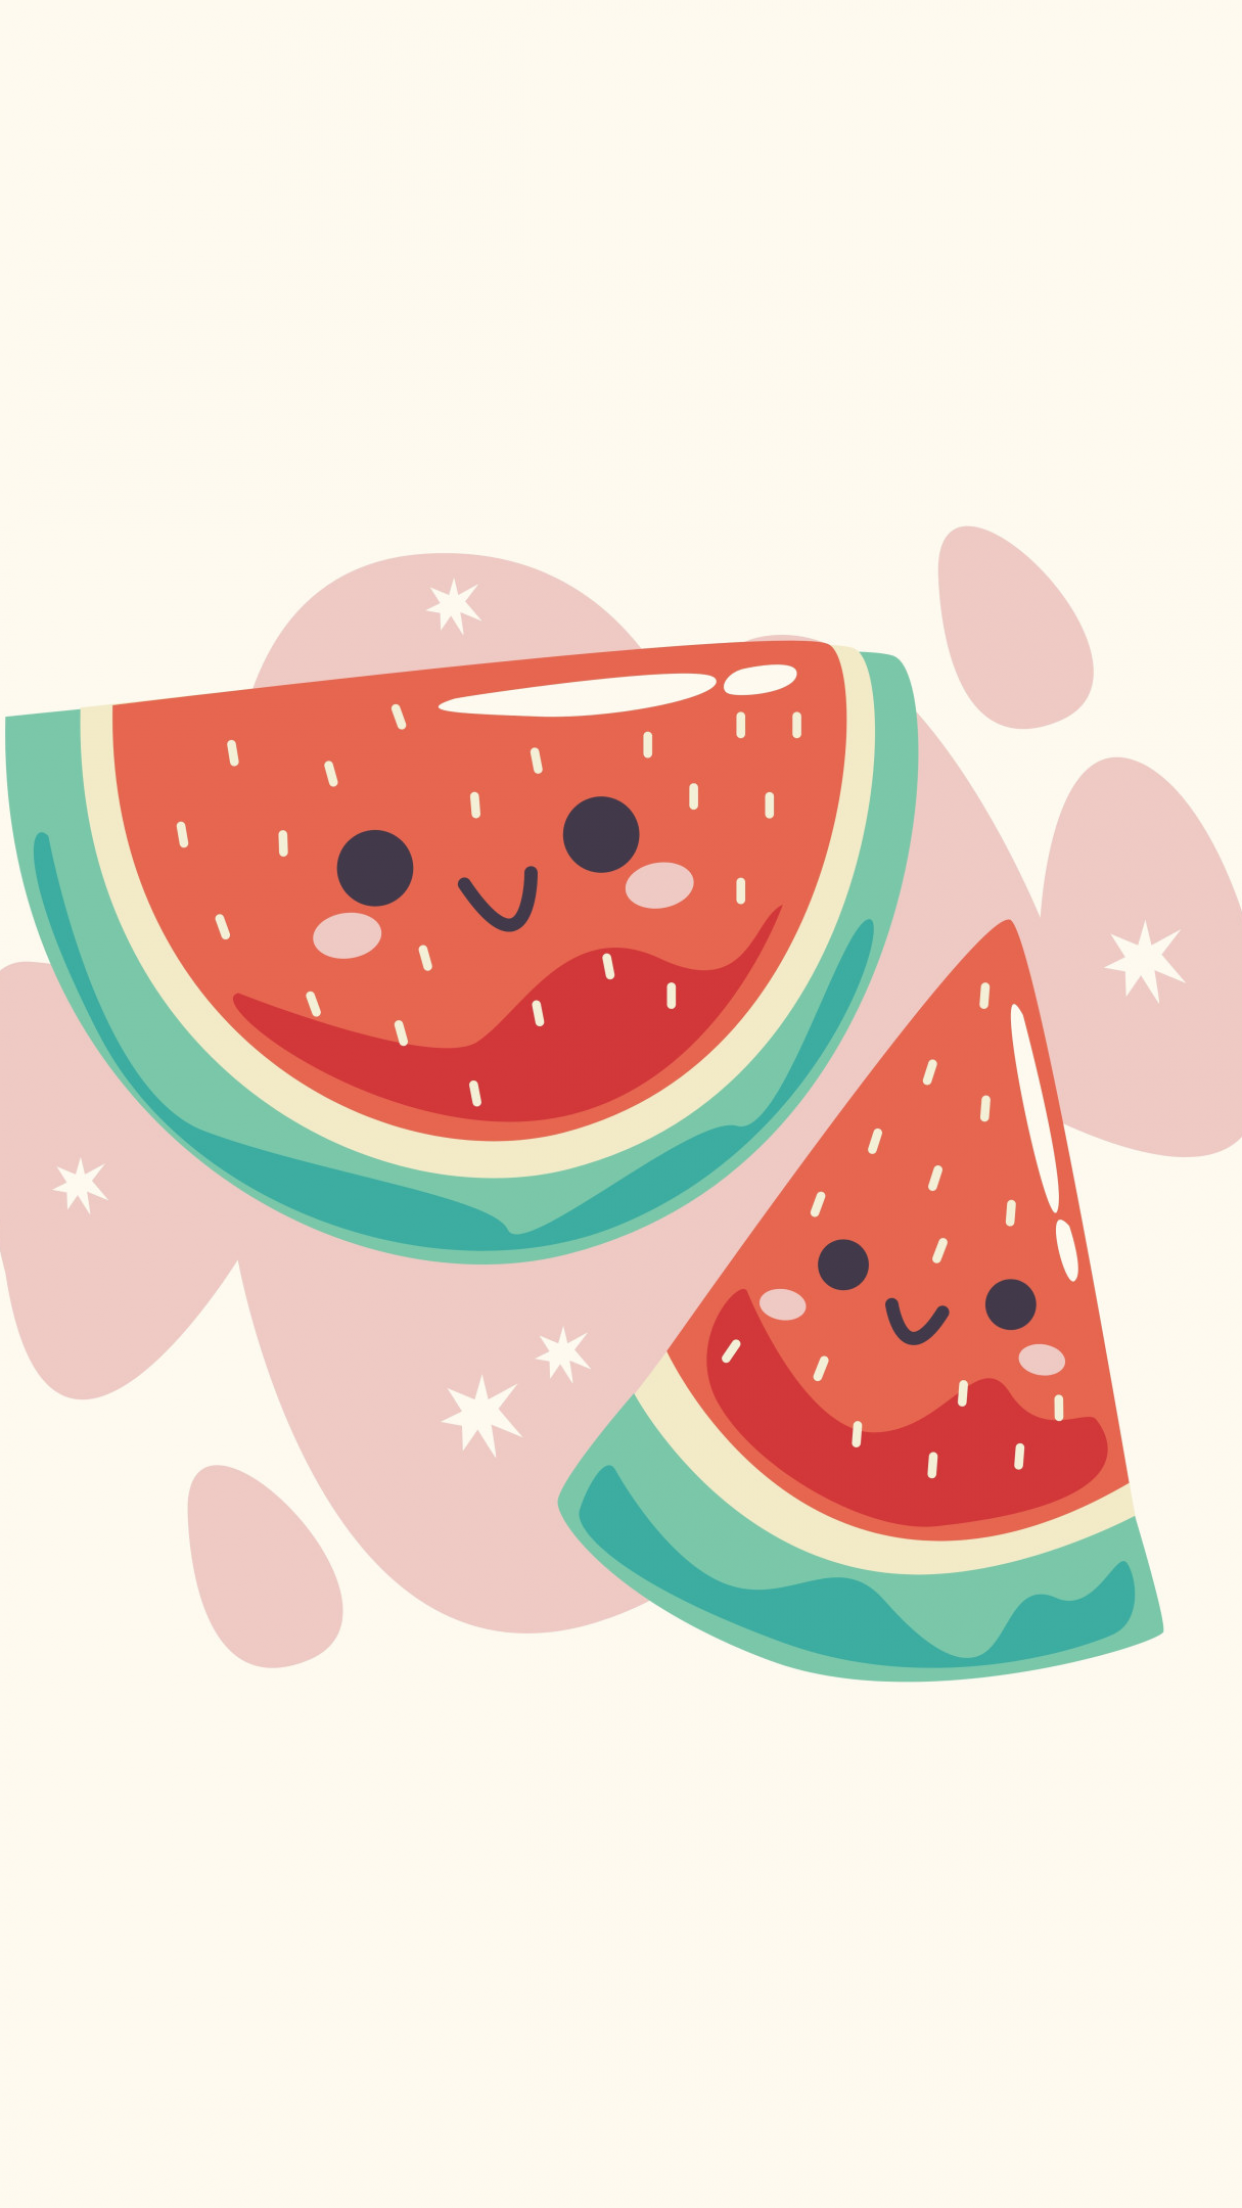 Kawaii Watermelon: Kết hợp giữa phong cách Kawaii và quả dưa hấu mát lạnh, những hình ảnh về Kawaii Watermelon sẽ khiến bạn thấy thích thú và đầy ấn tượng. Hãy xem ngay để cảm nhận sức hút của những hình ảnh đáng yêu này!